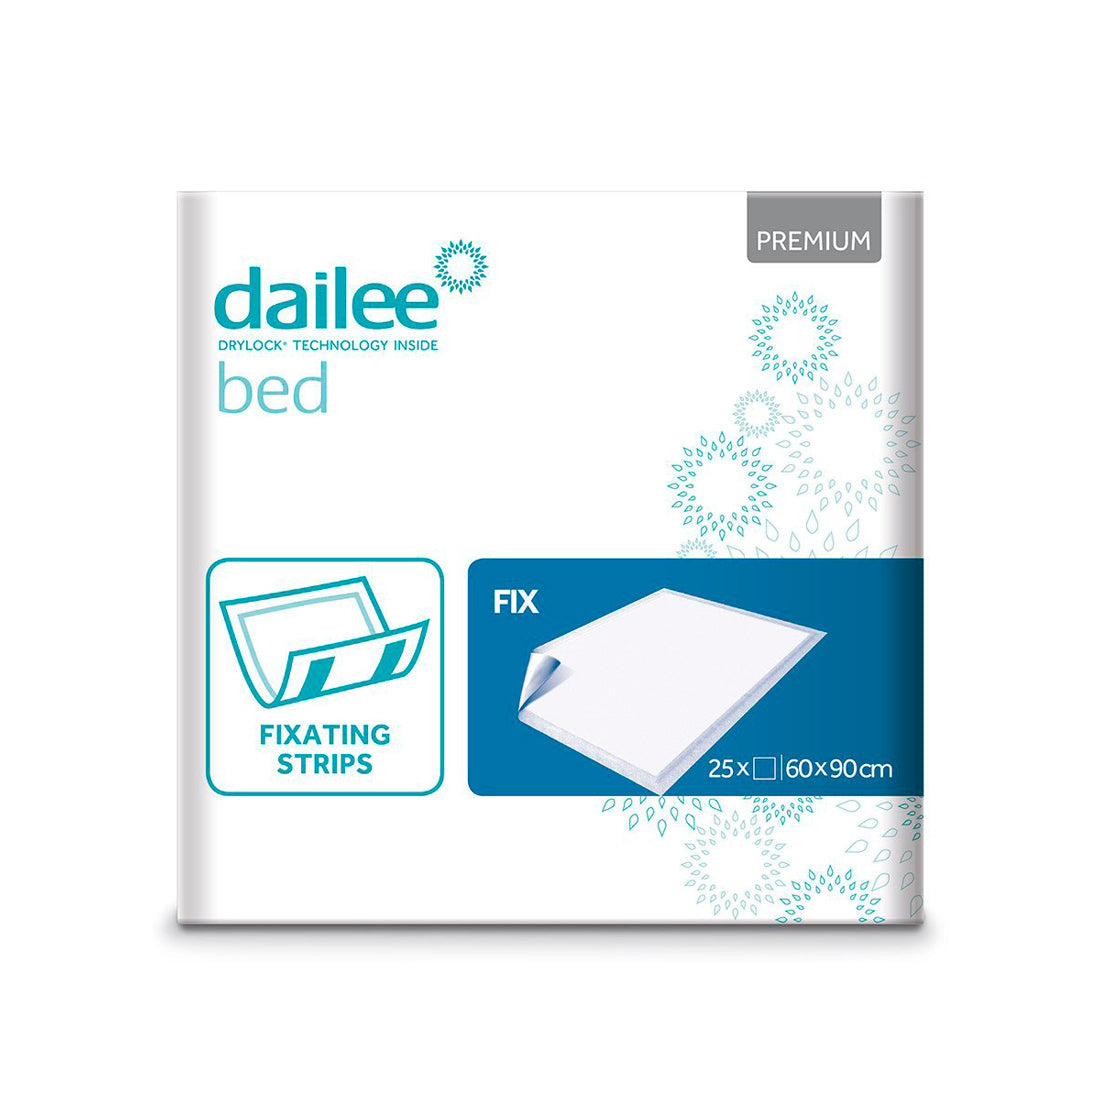 Paturici absorbante pentru pat DAILEE Bed Premium Fix 60x90 cm 25 bucati